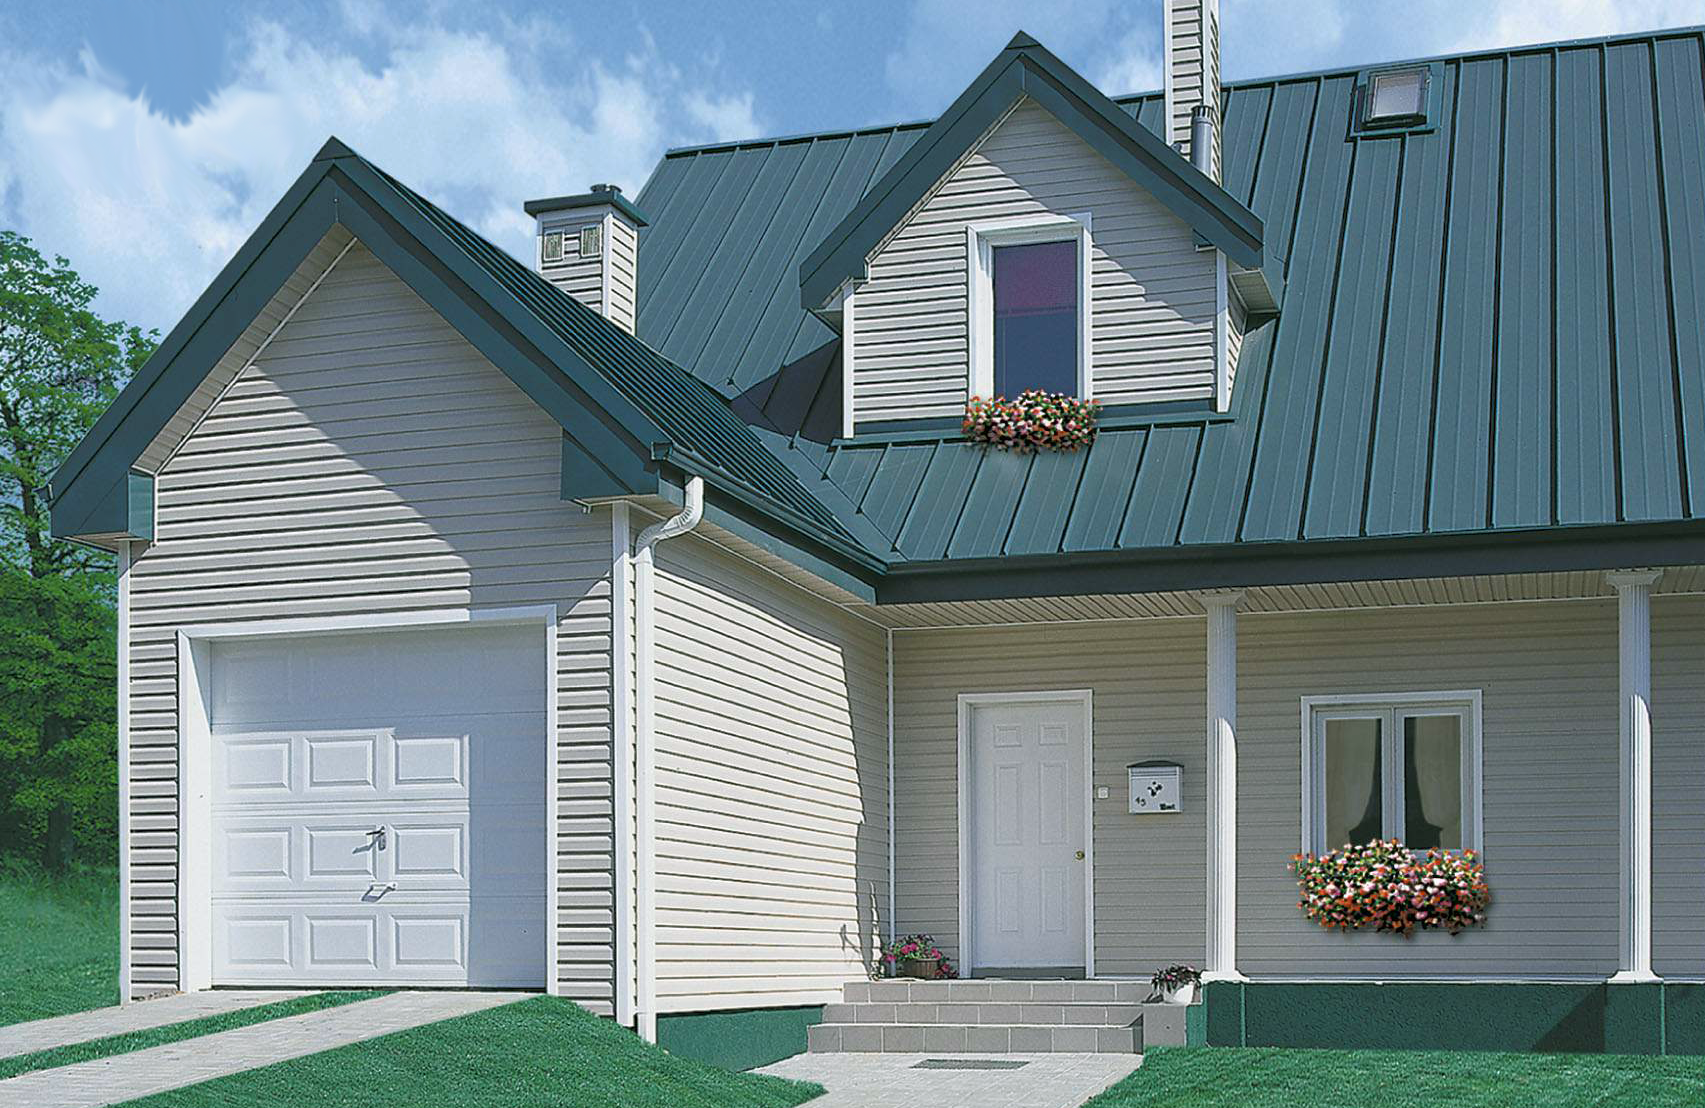 Цвет сайдинга для обшивки дома: под коричневую, красную или зеленую крышу